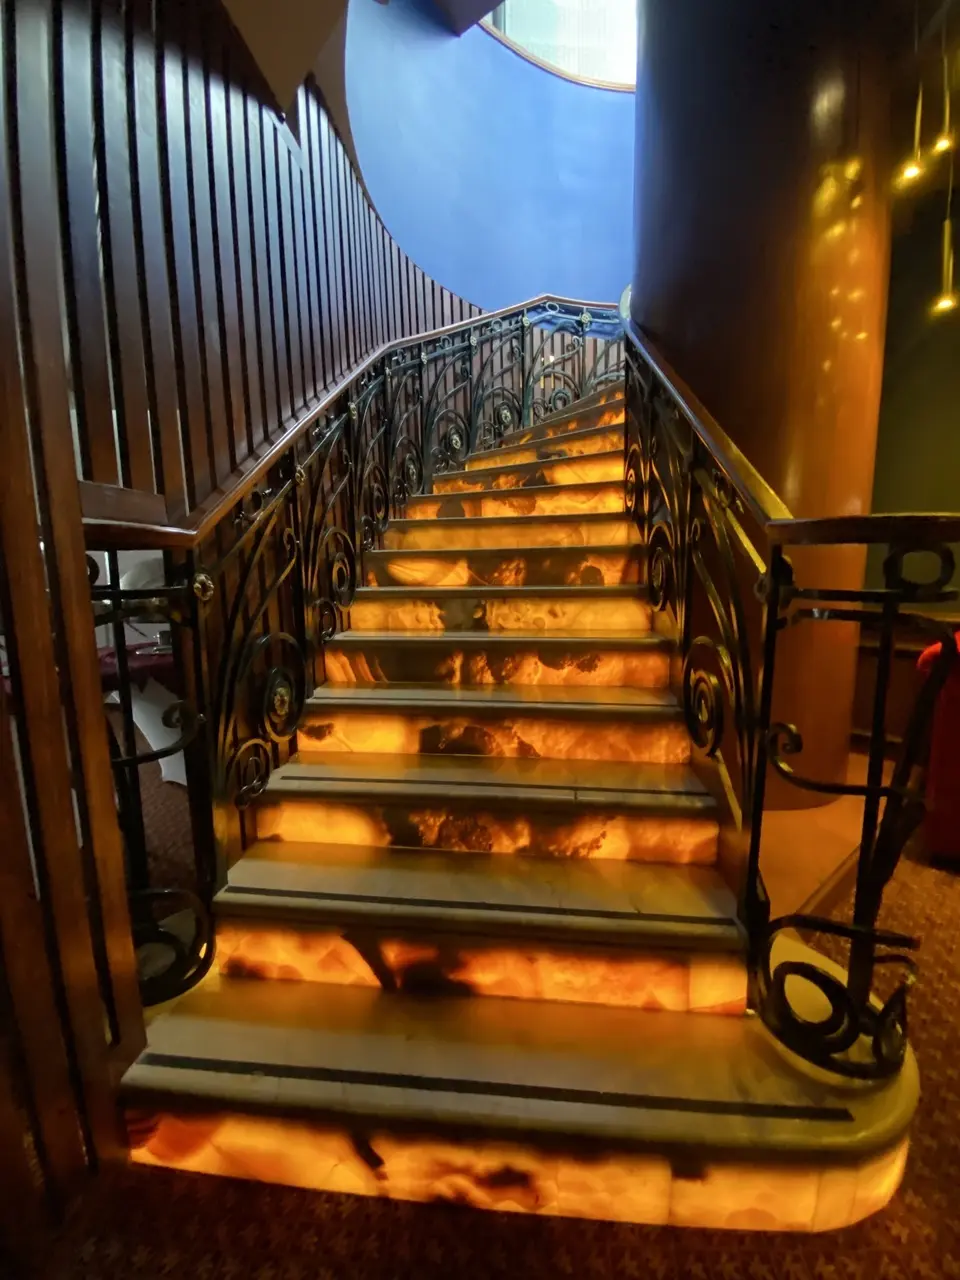 Gran Hotel Ciudad de Mexico terraza escaleras